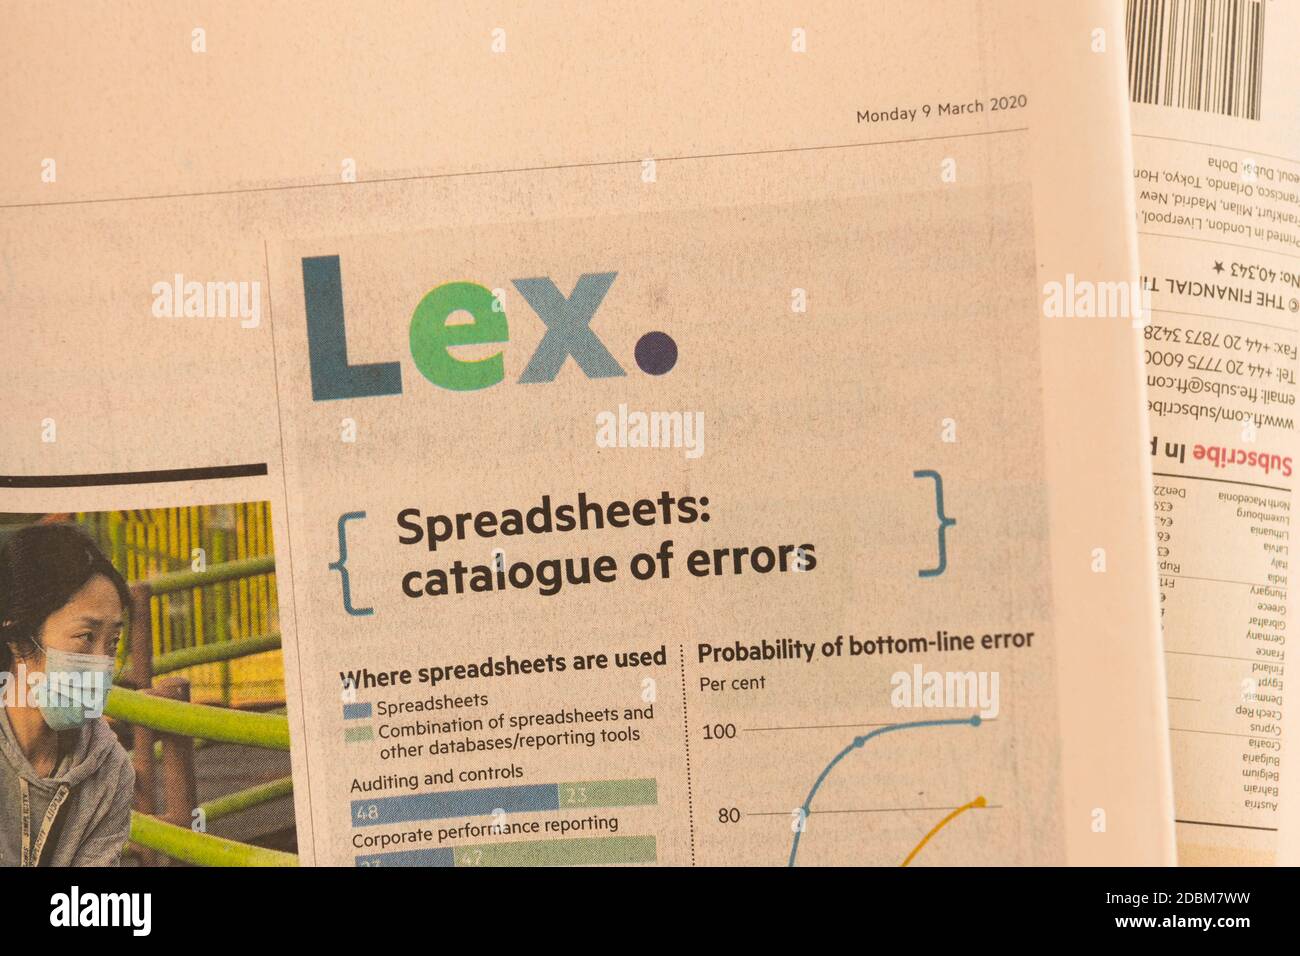 La colonna Lex del giornale Financial Times evidenzia gli errori in fogli di calcolo Foto Stock